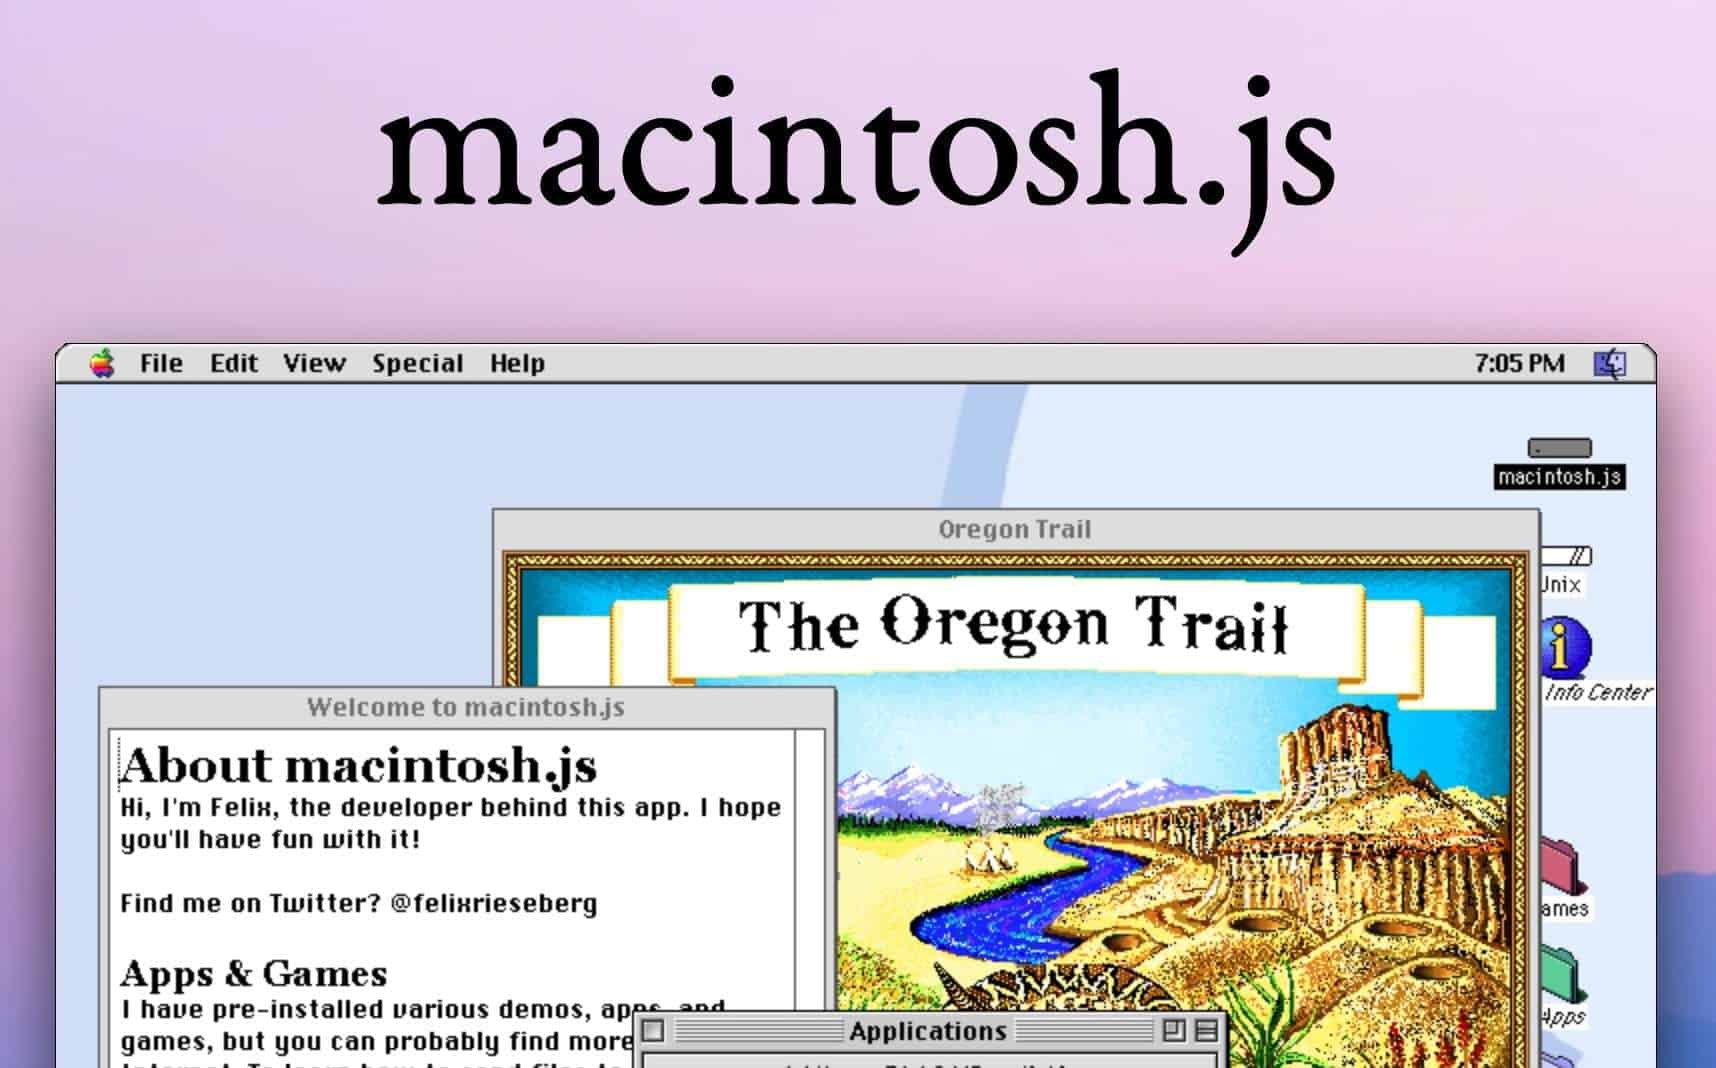 windows keyboard emulator mac